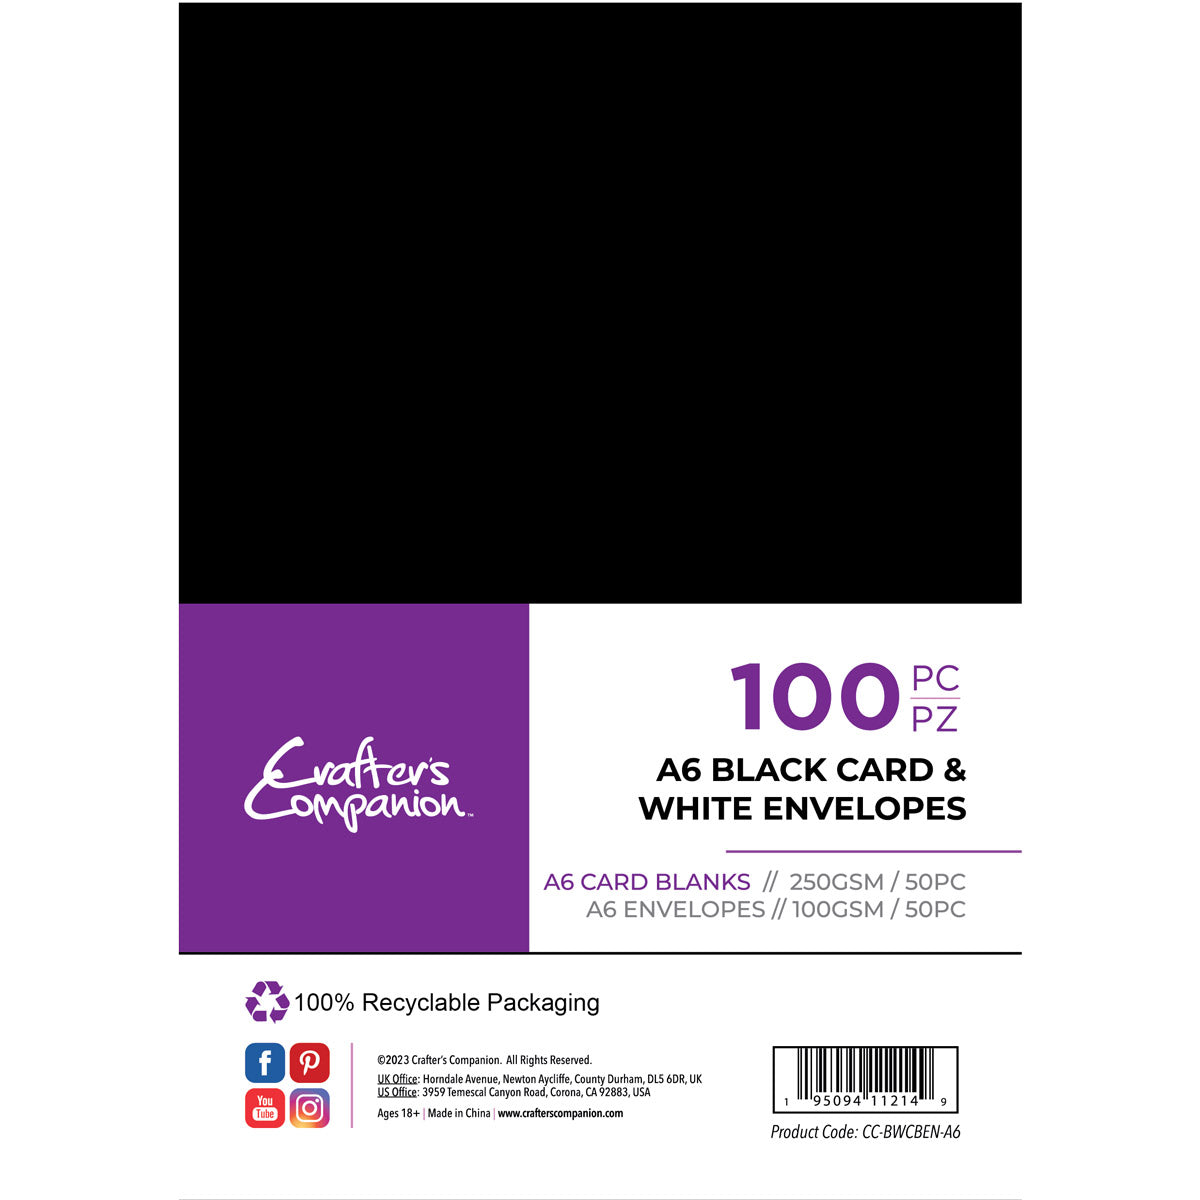 Crafters Begleiter - A6 Schwarze Karten & weiße Umschläge 100 Stück